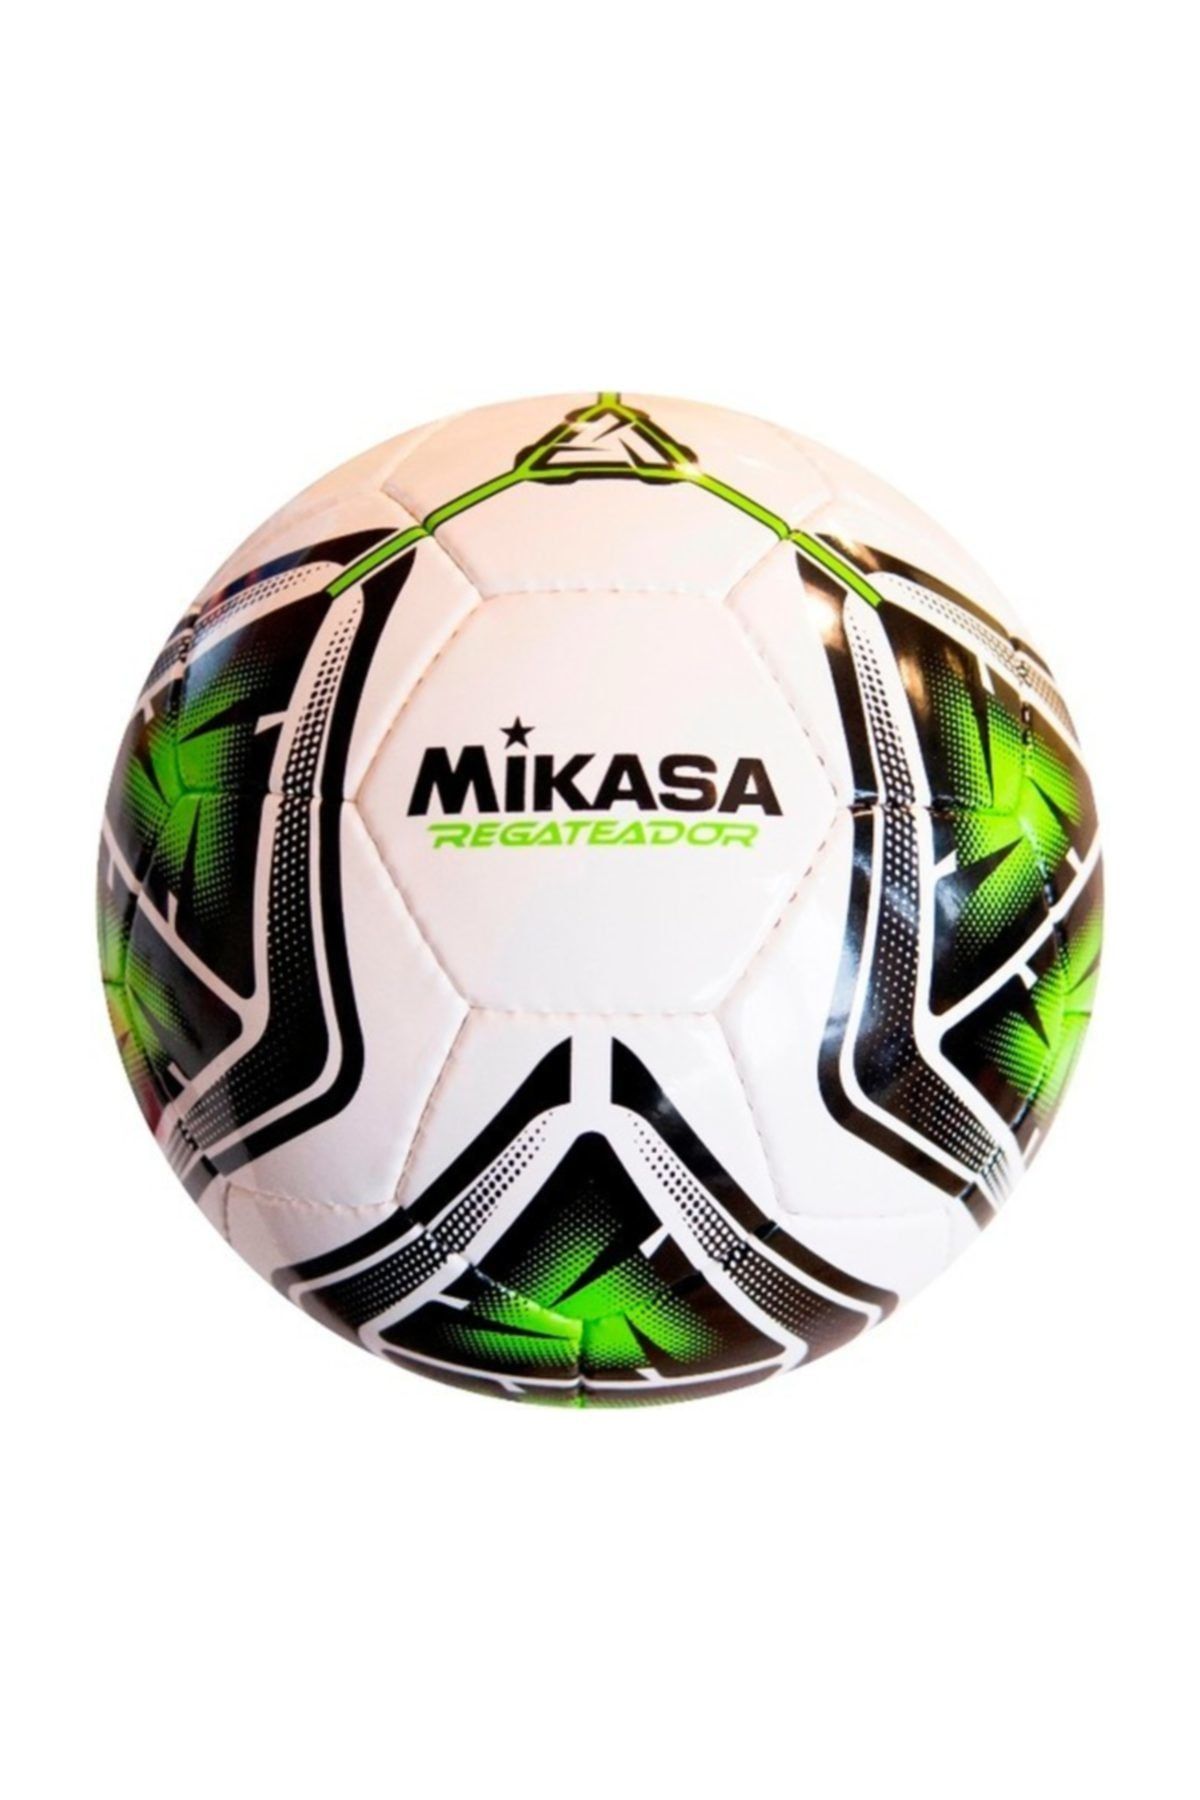 MIKASA El Dikişli Halı Saha Futbol Topu Regateador5-g Beyaz-yeşil